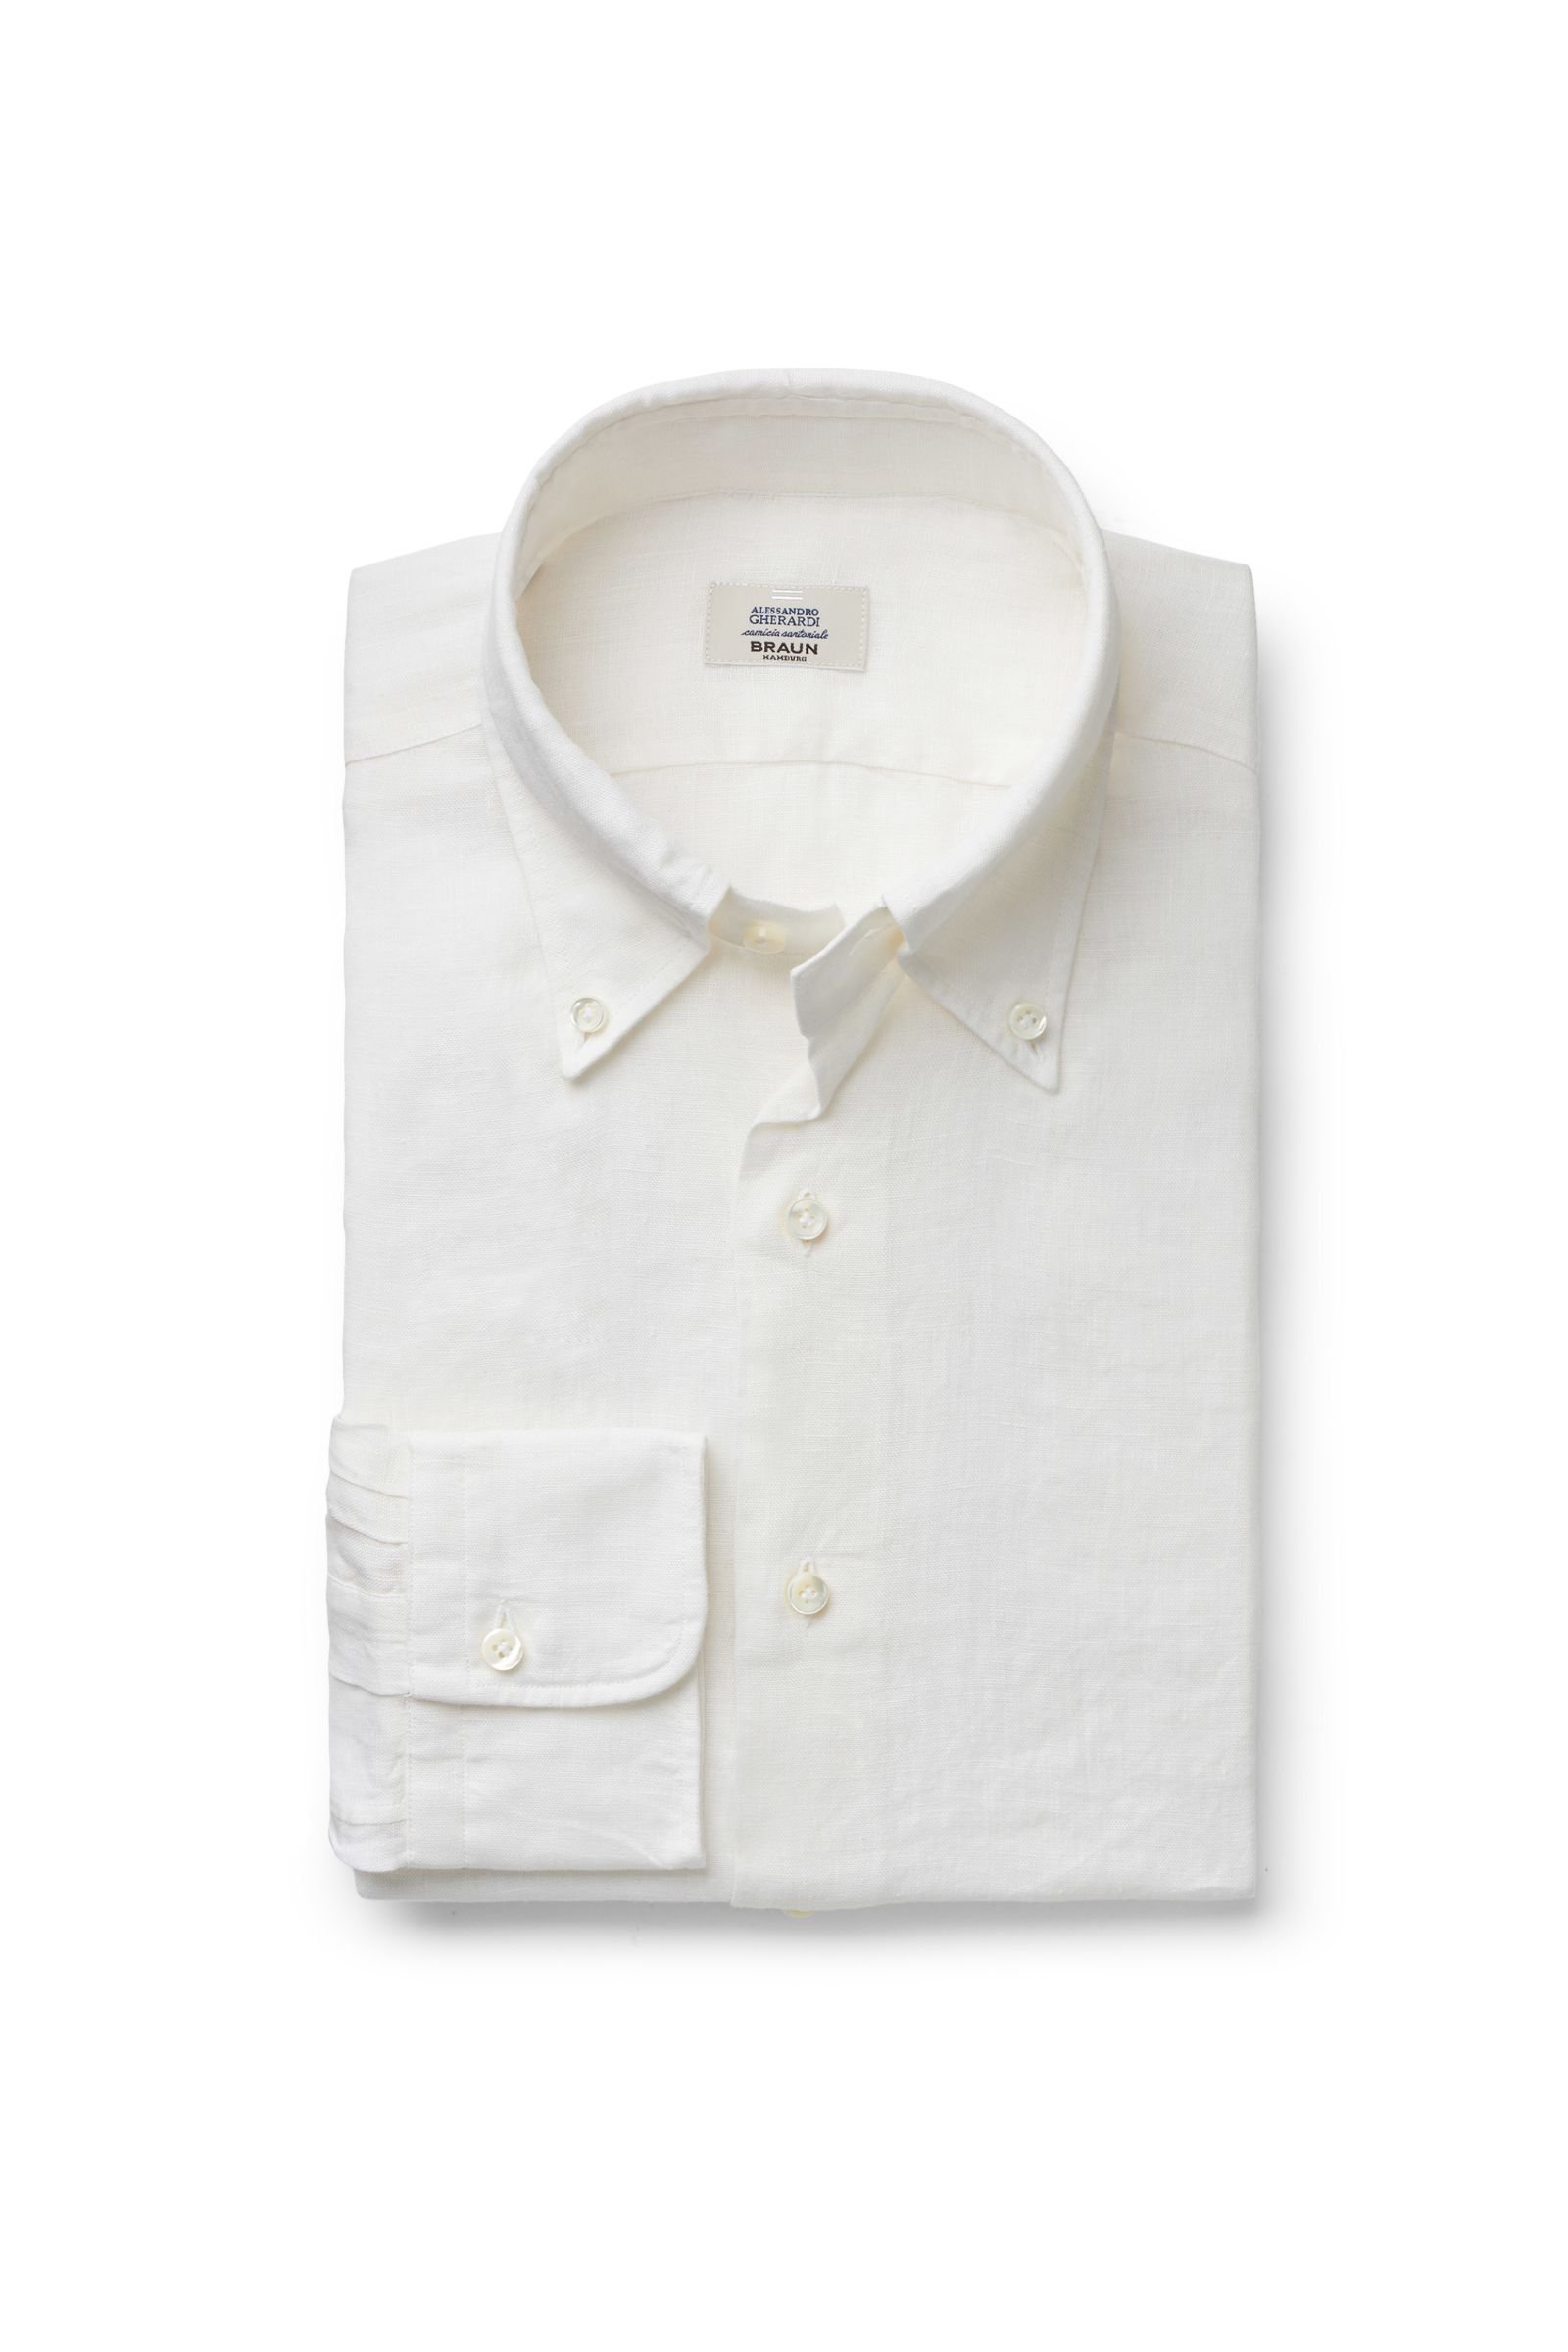 Linen shirt button-down collar off-white